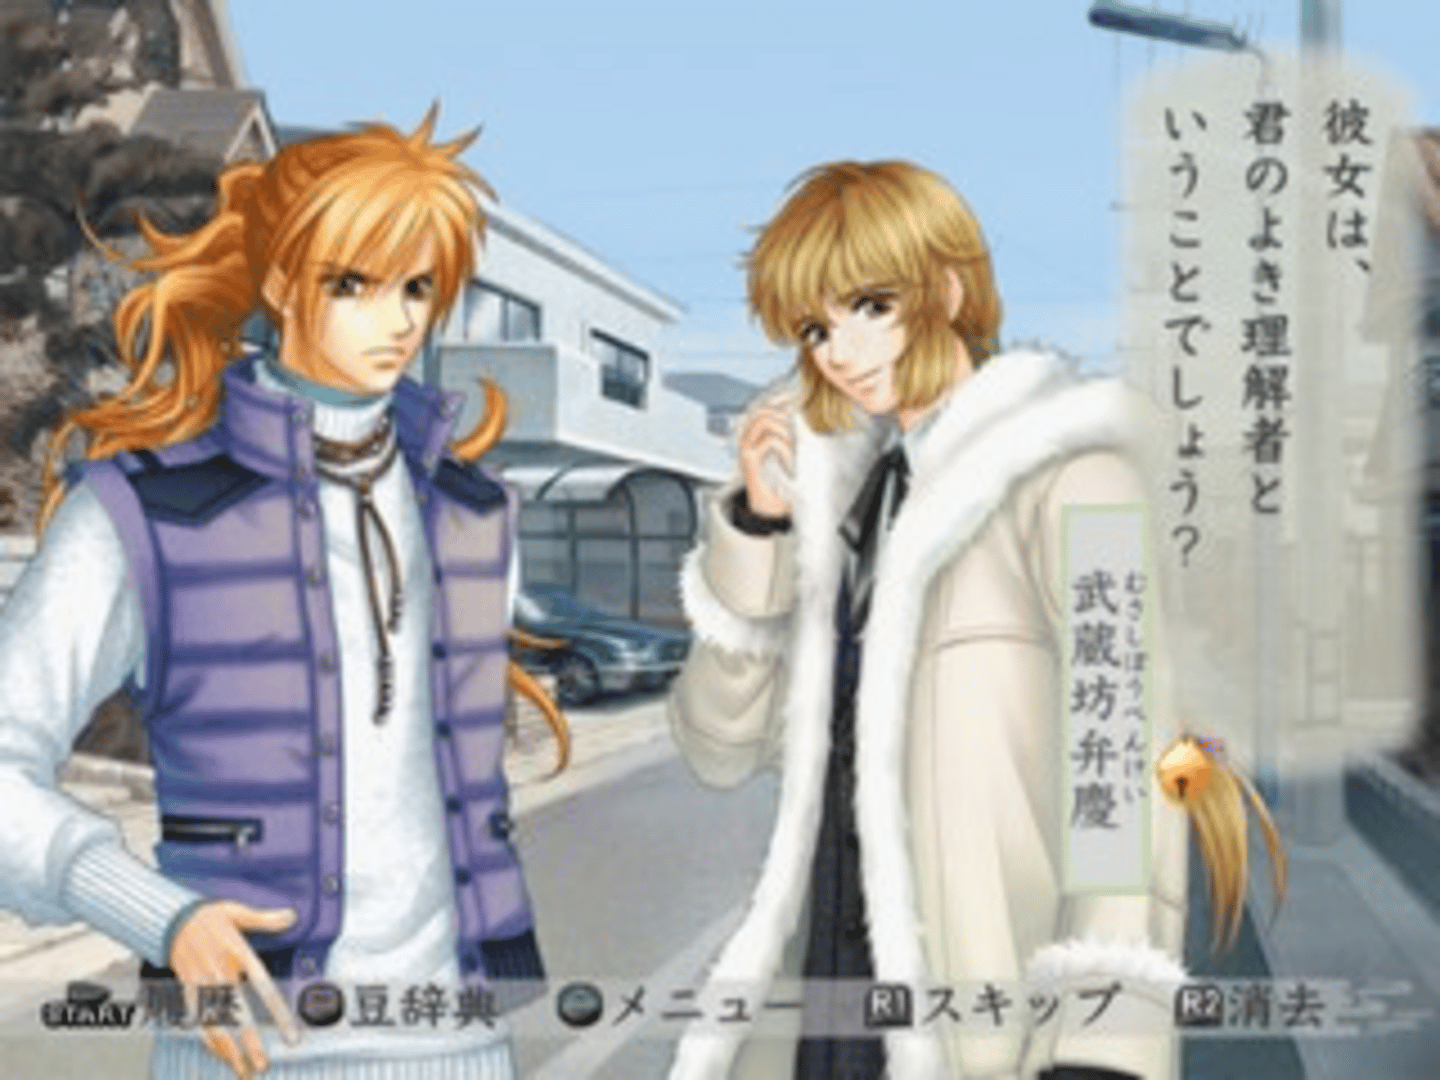 Harukanaru Toki no Naka de 3: Unmei no Labyrinth screenshot